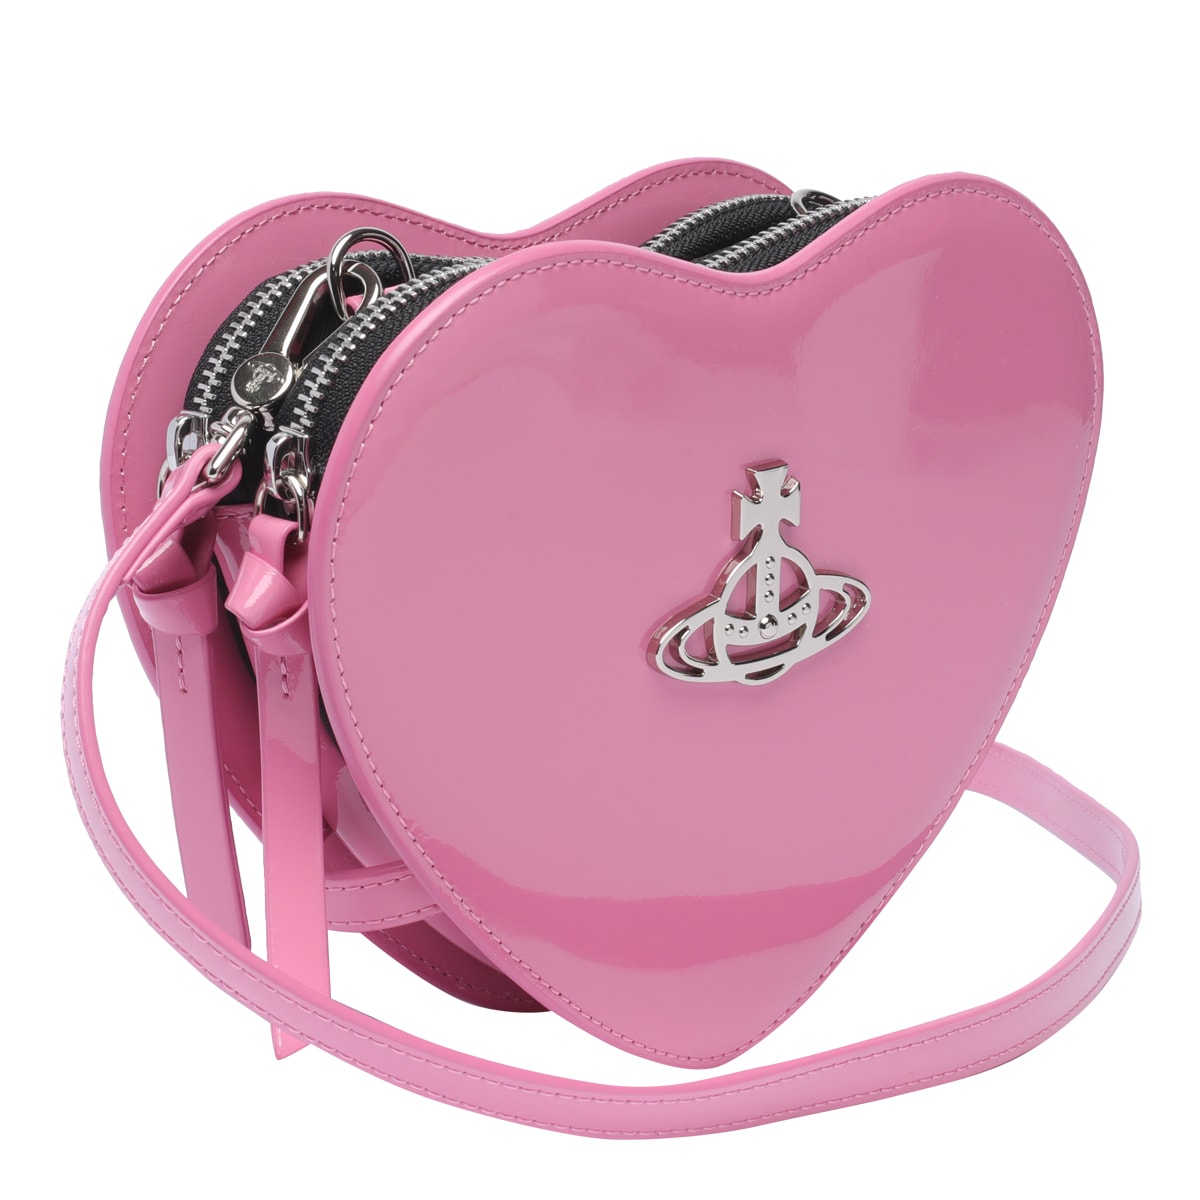 Vivienne Westwood Pink Louise Heart Bag